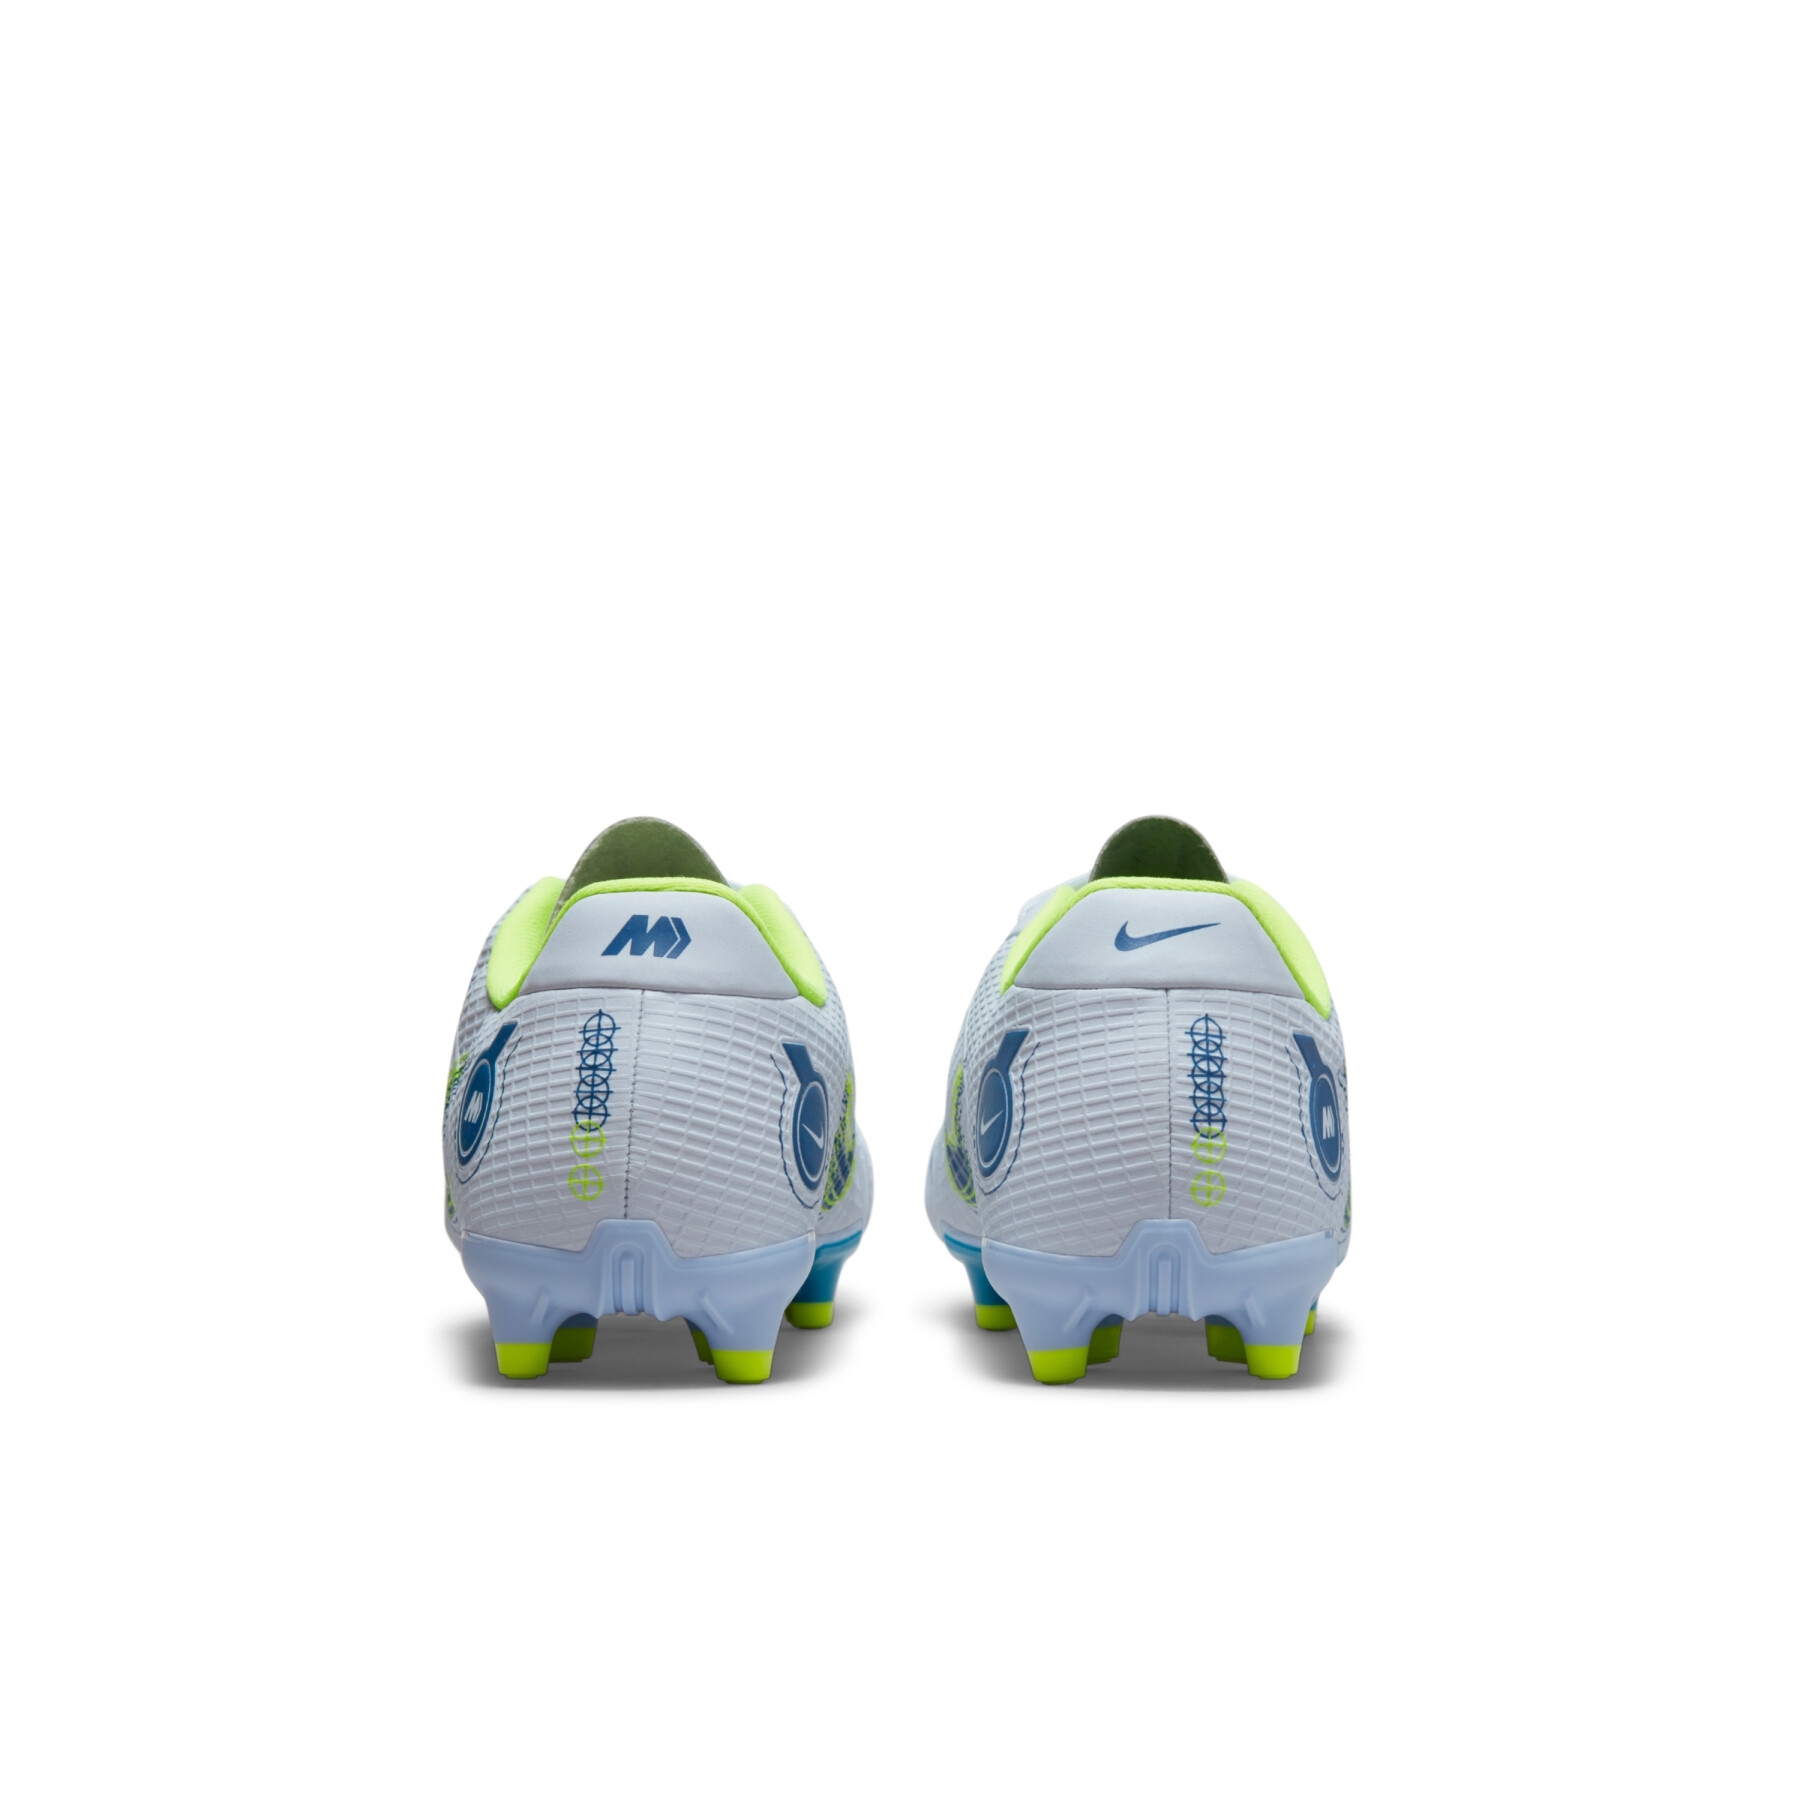 Fotbollsskor för barn Nike Jr. Mercurial Vapor 14 Academy MG